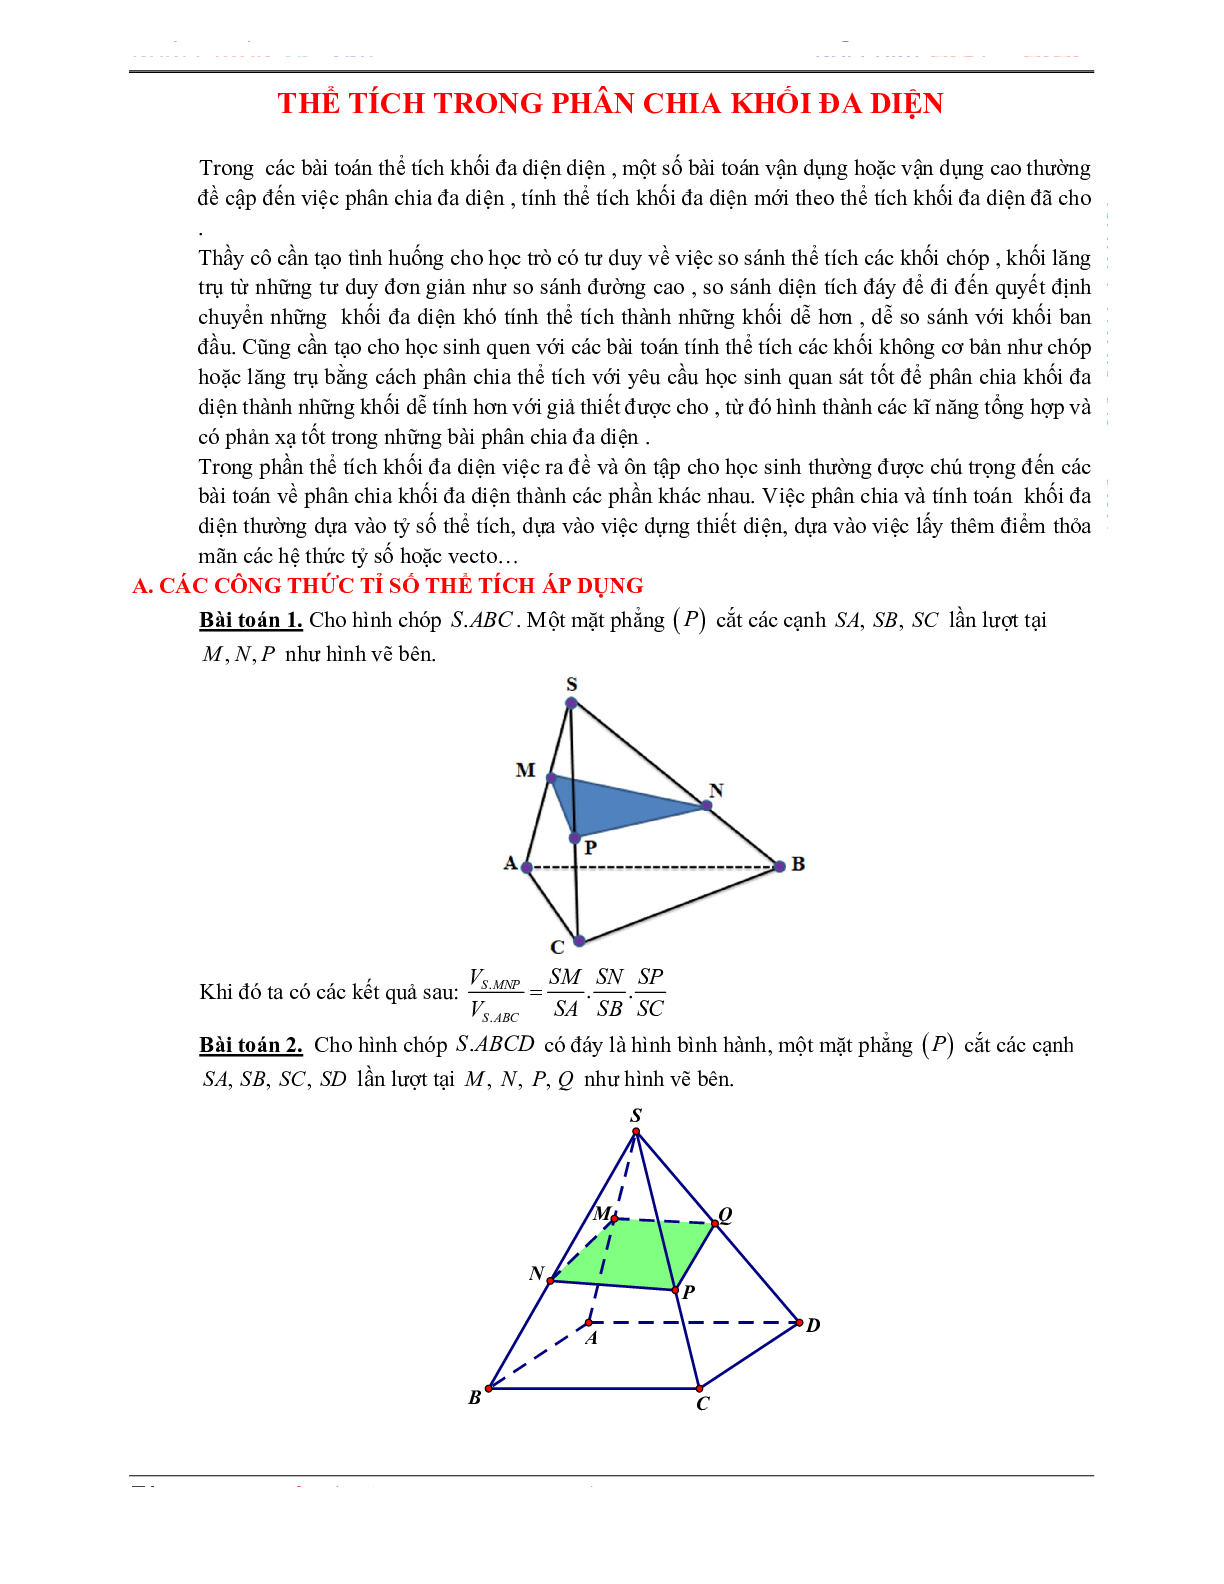 50 Bài tập Khái niệm về thể tích trong phân chia khối đa diện (có đáp án) - Toán 12 (trang 1)